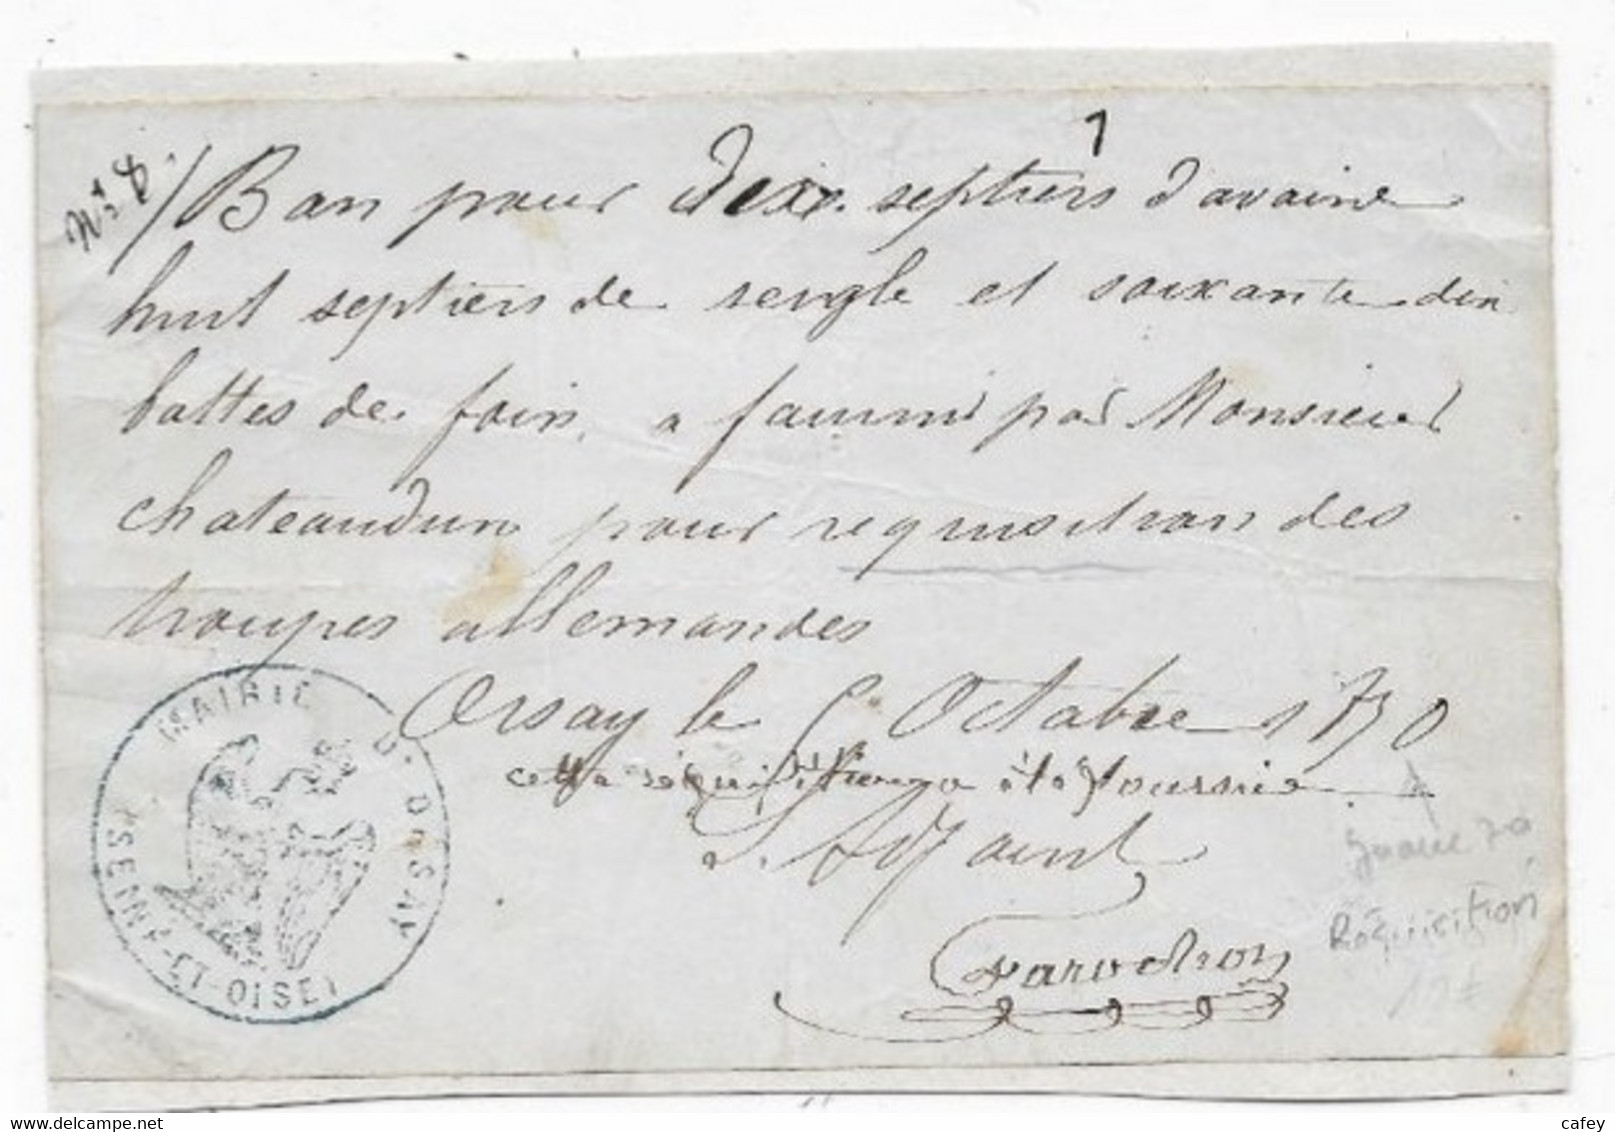 Guerre 1870 Document Réquisition De Foin Pour Les Troupes Allemandes Mairie D'ORSAY SEINE ET OISE Octobre 1870 - Guerre De 1870